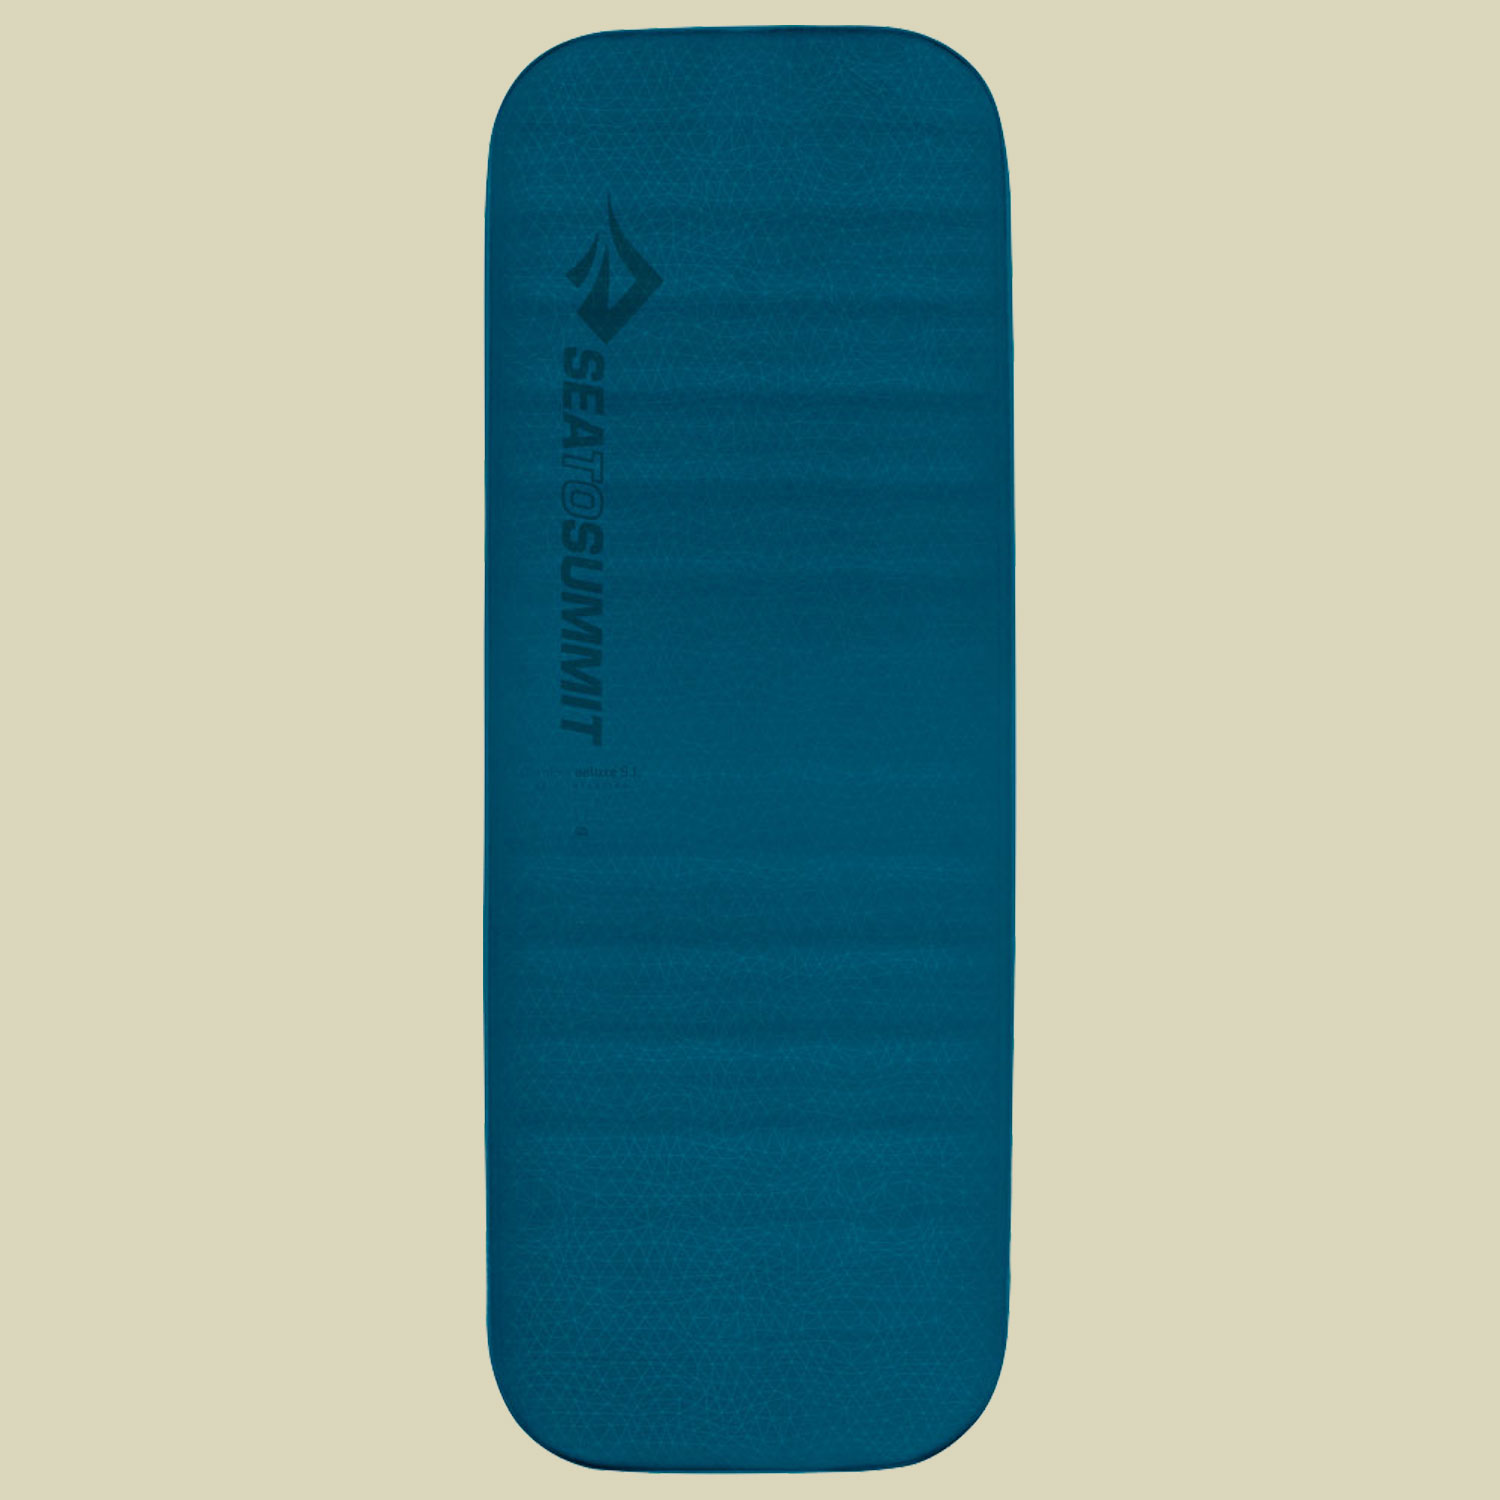 Comfort Deluxe S.I. Mat Liegefläche 183 x 64 cm (regular wide) Farbe byron blue von Sea to Summit